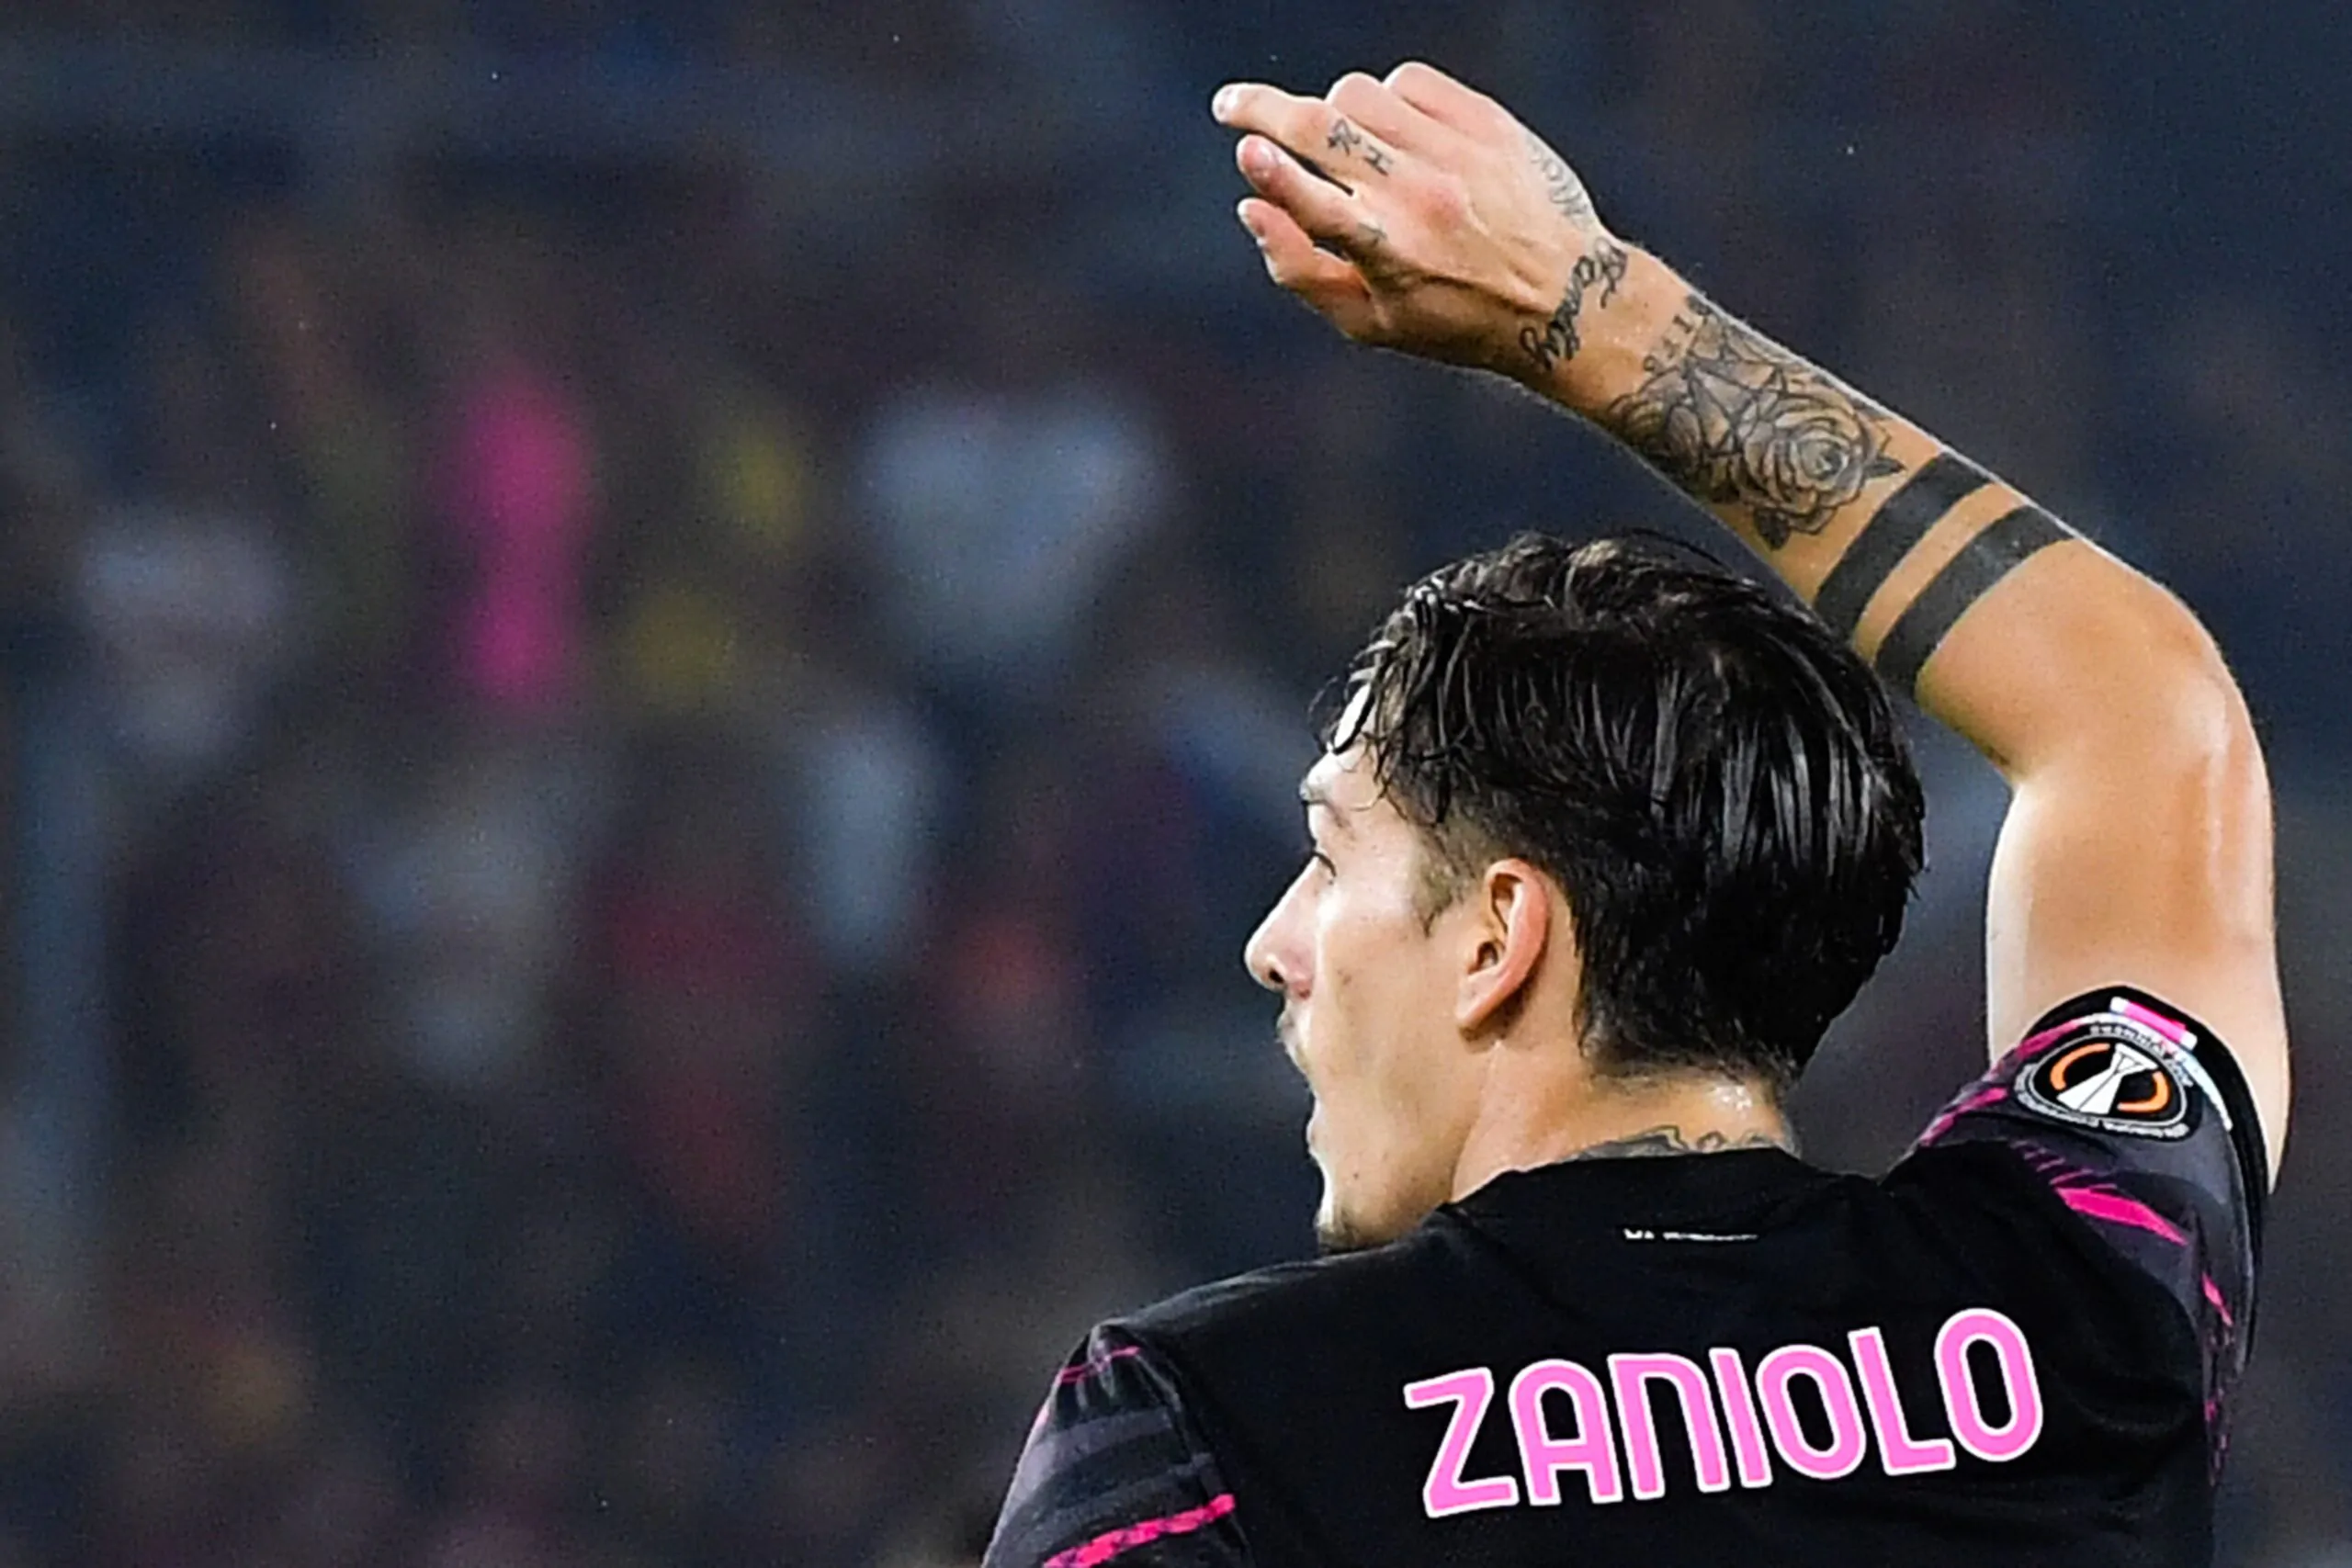 UFFICIALE- Zaniolo è un nuovo giocatore del Galatasaray: le sue parole per salutare la Roma